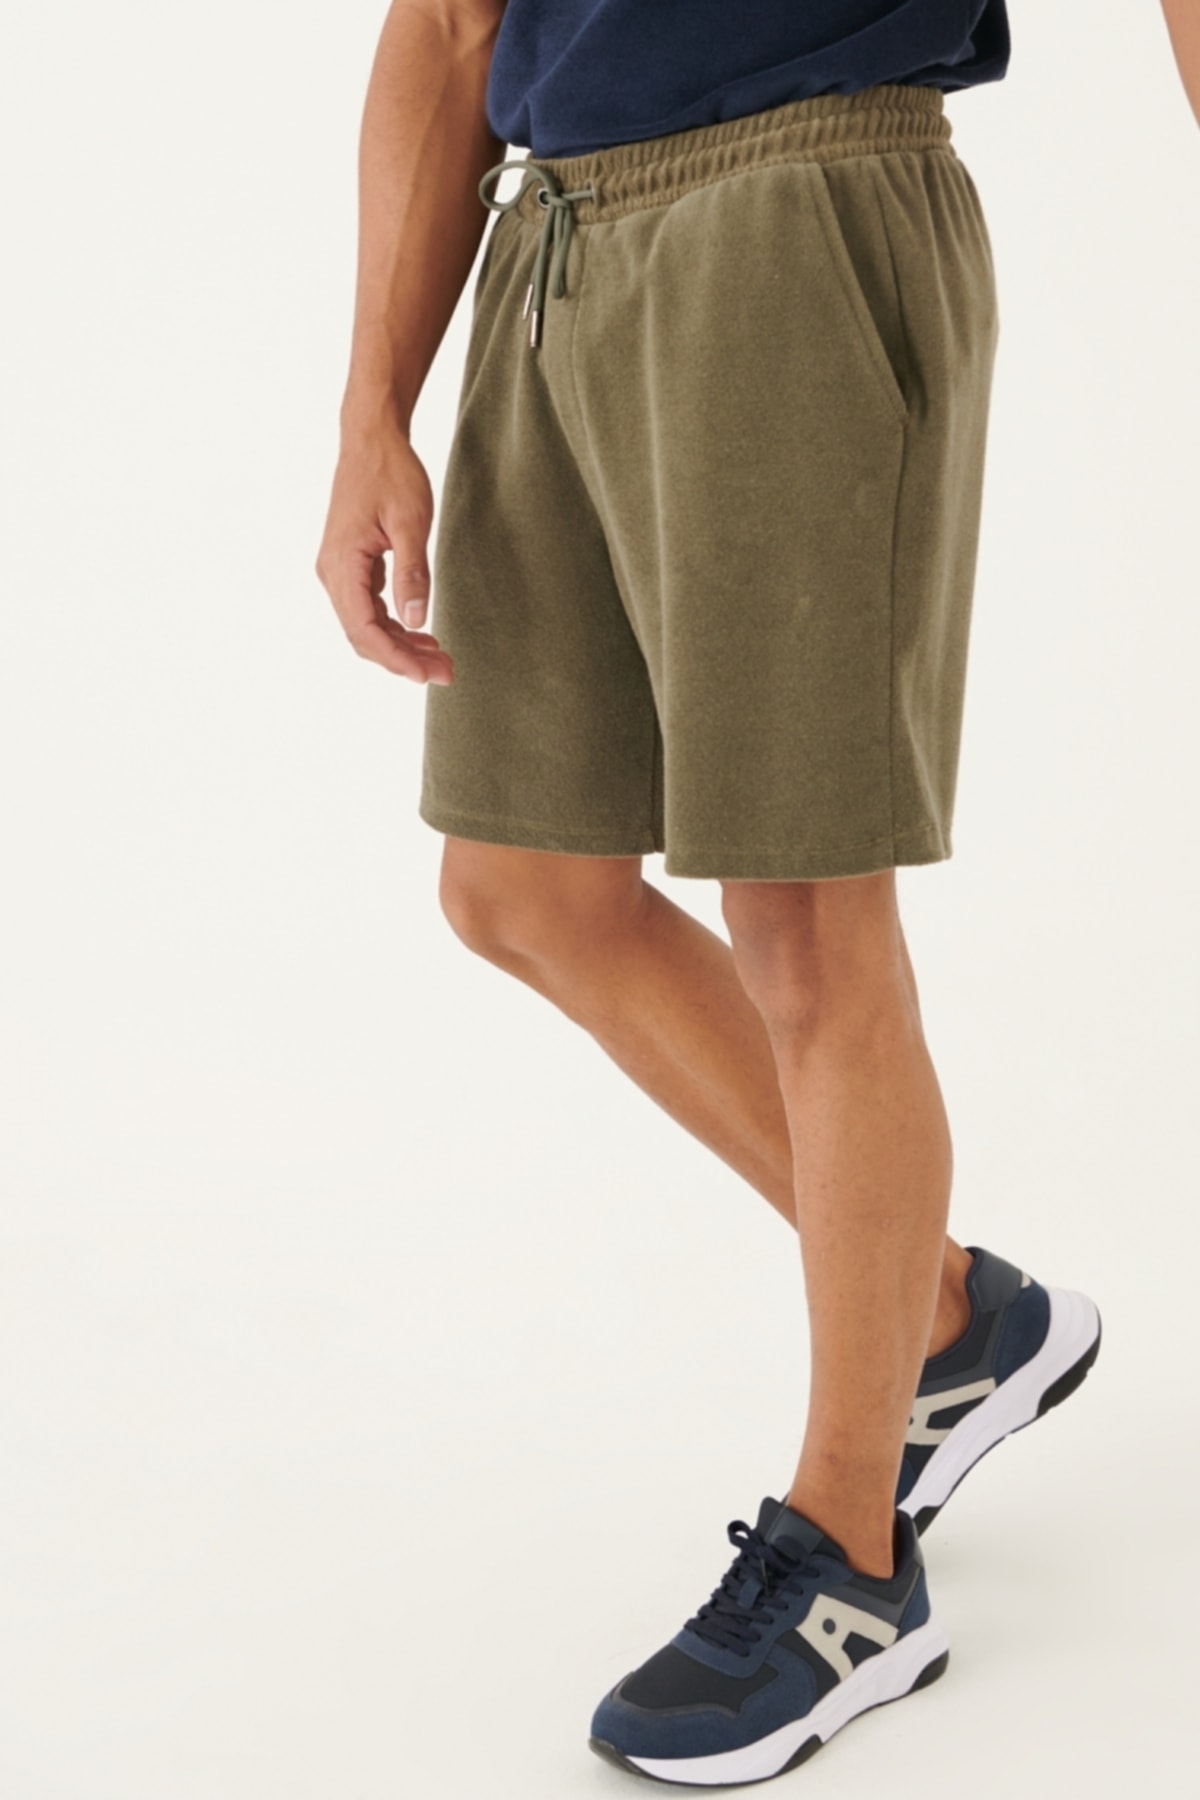 ALTINYILDIZ CLASSICS Men's Khaki Standard Fit Regular Cut Towel Shorts